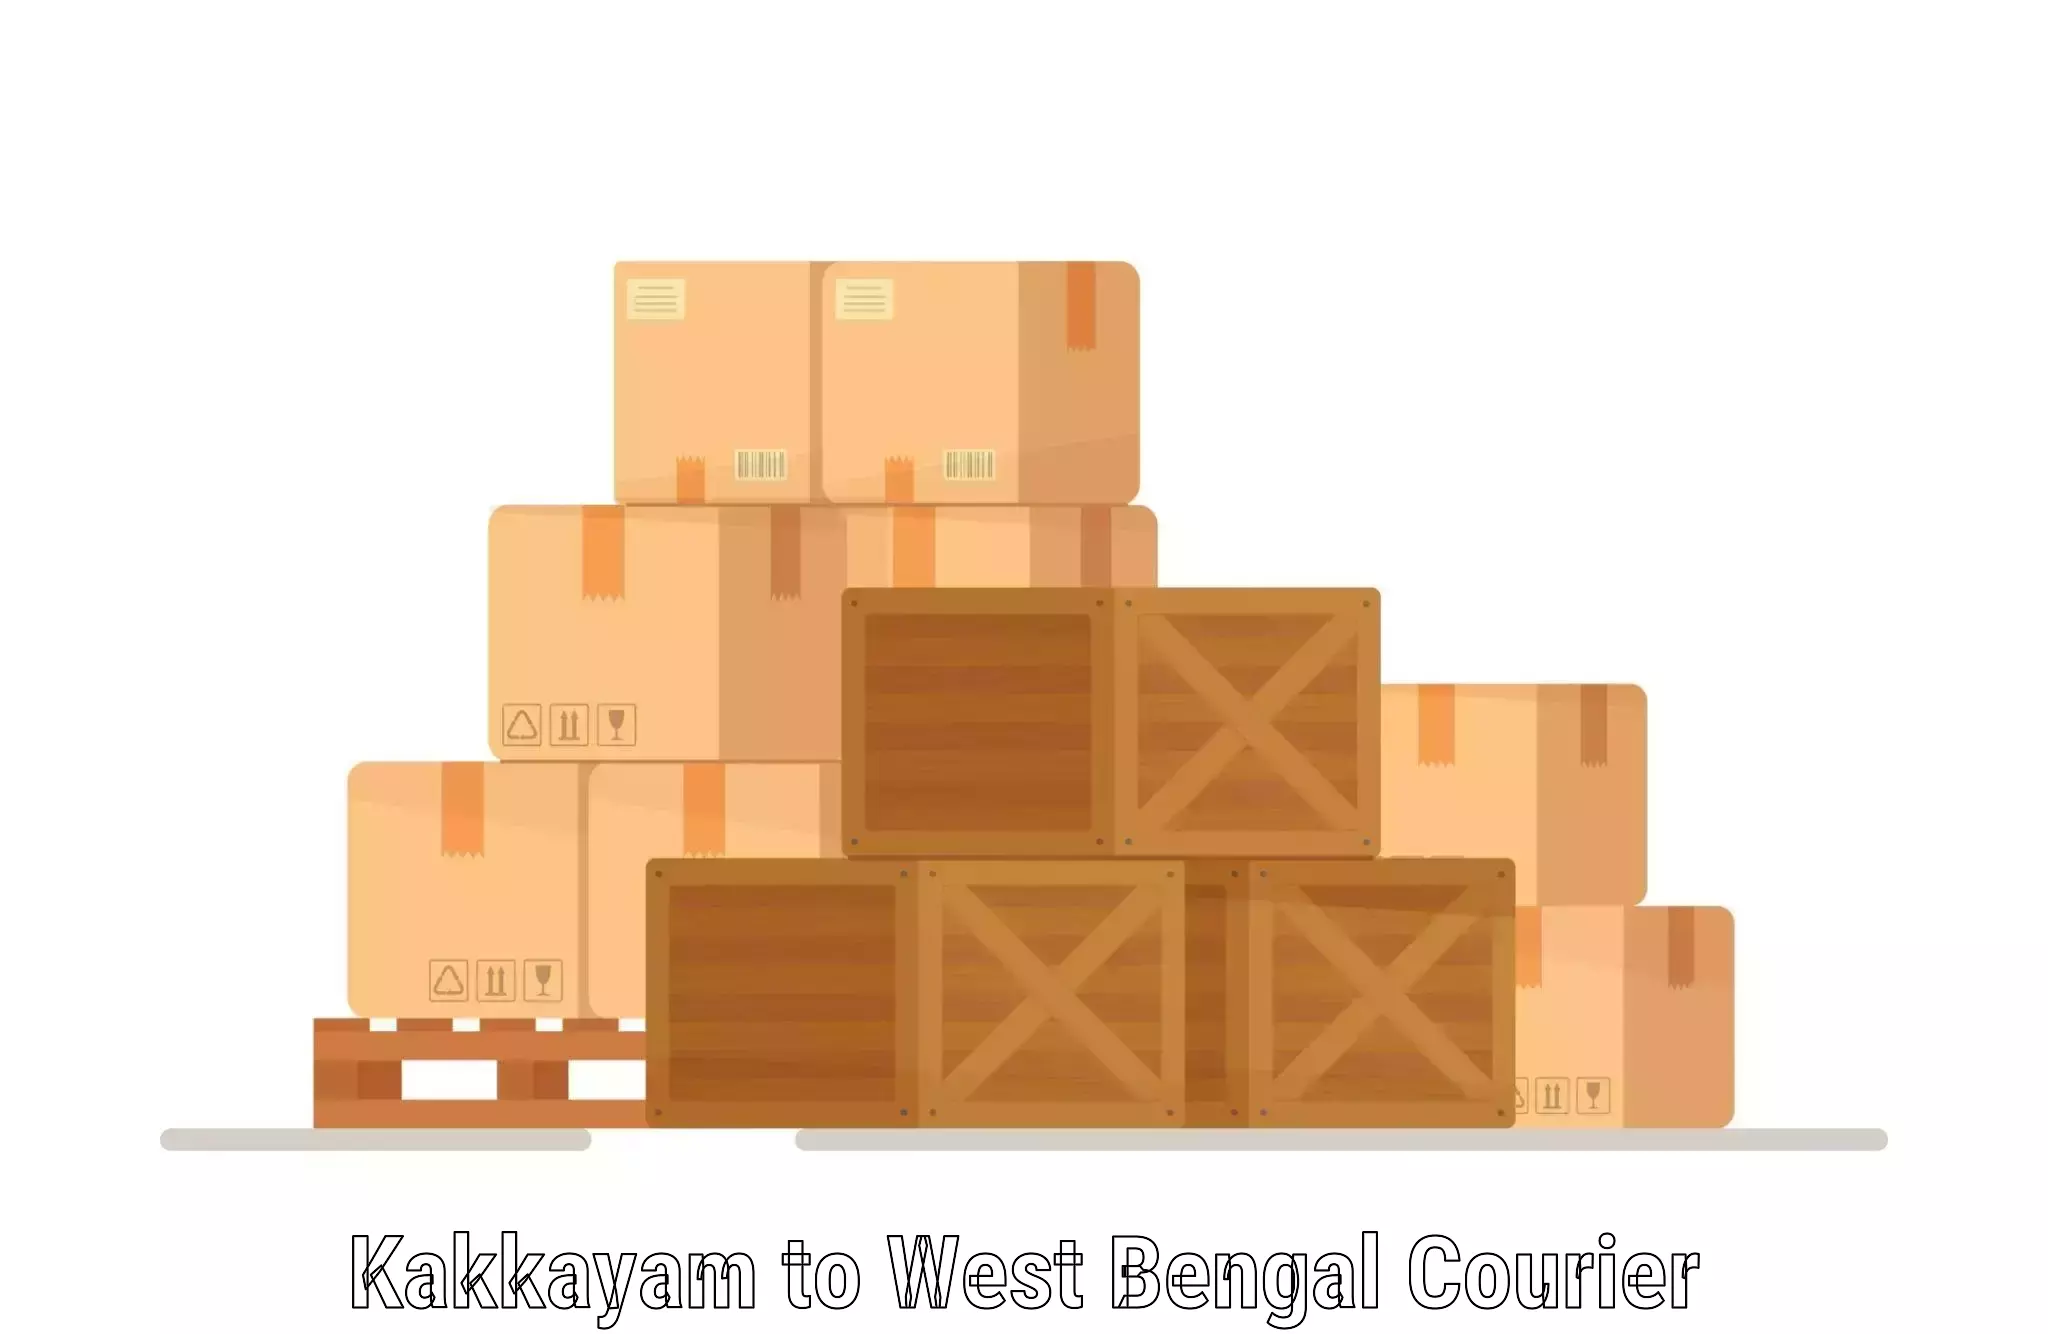 High-speed parcel service Kakkayam to IIIT Kalyani